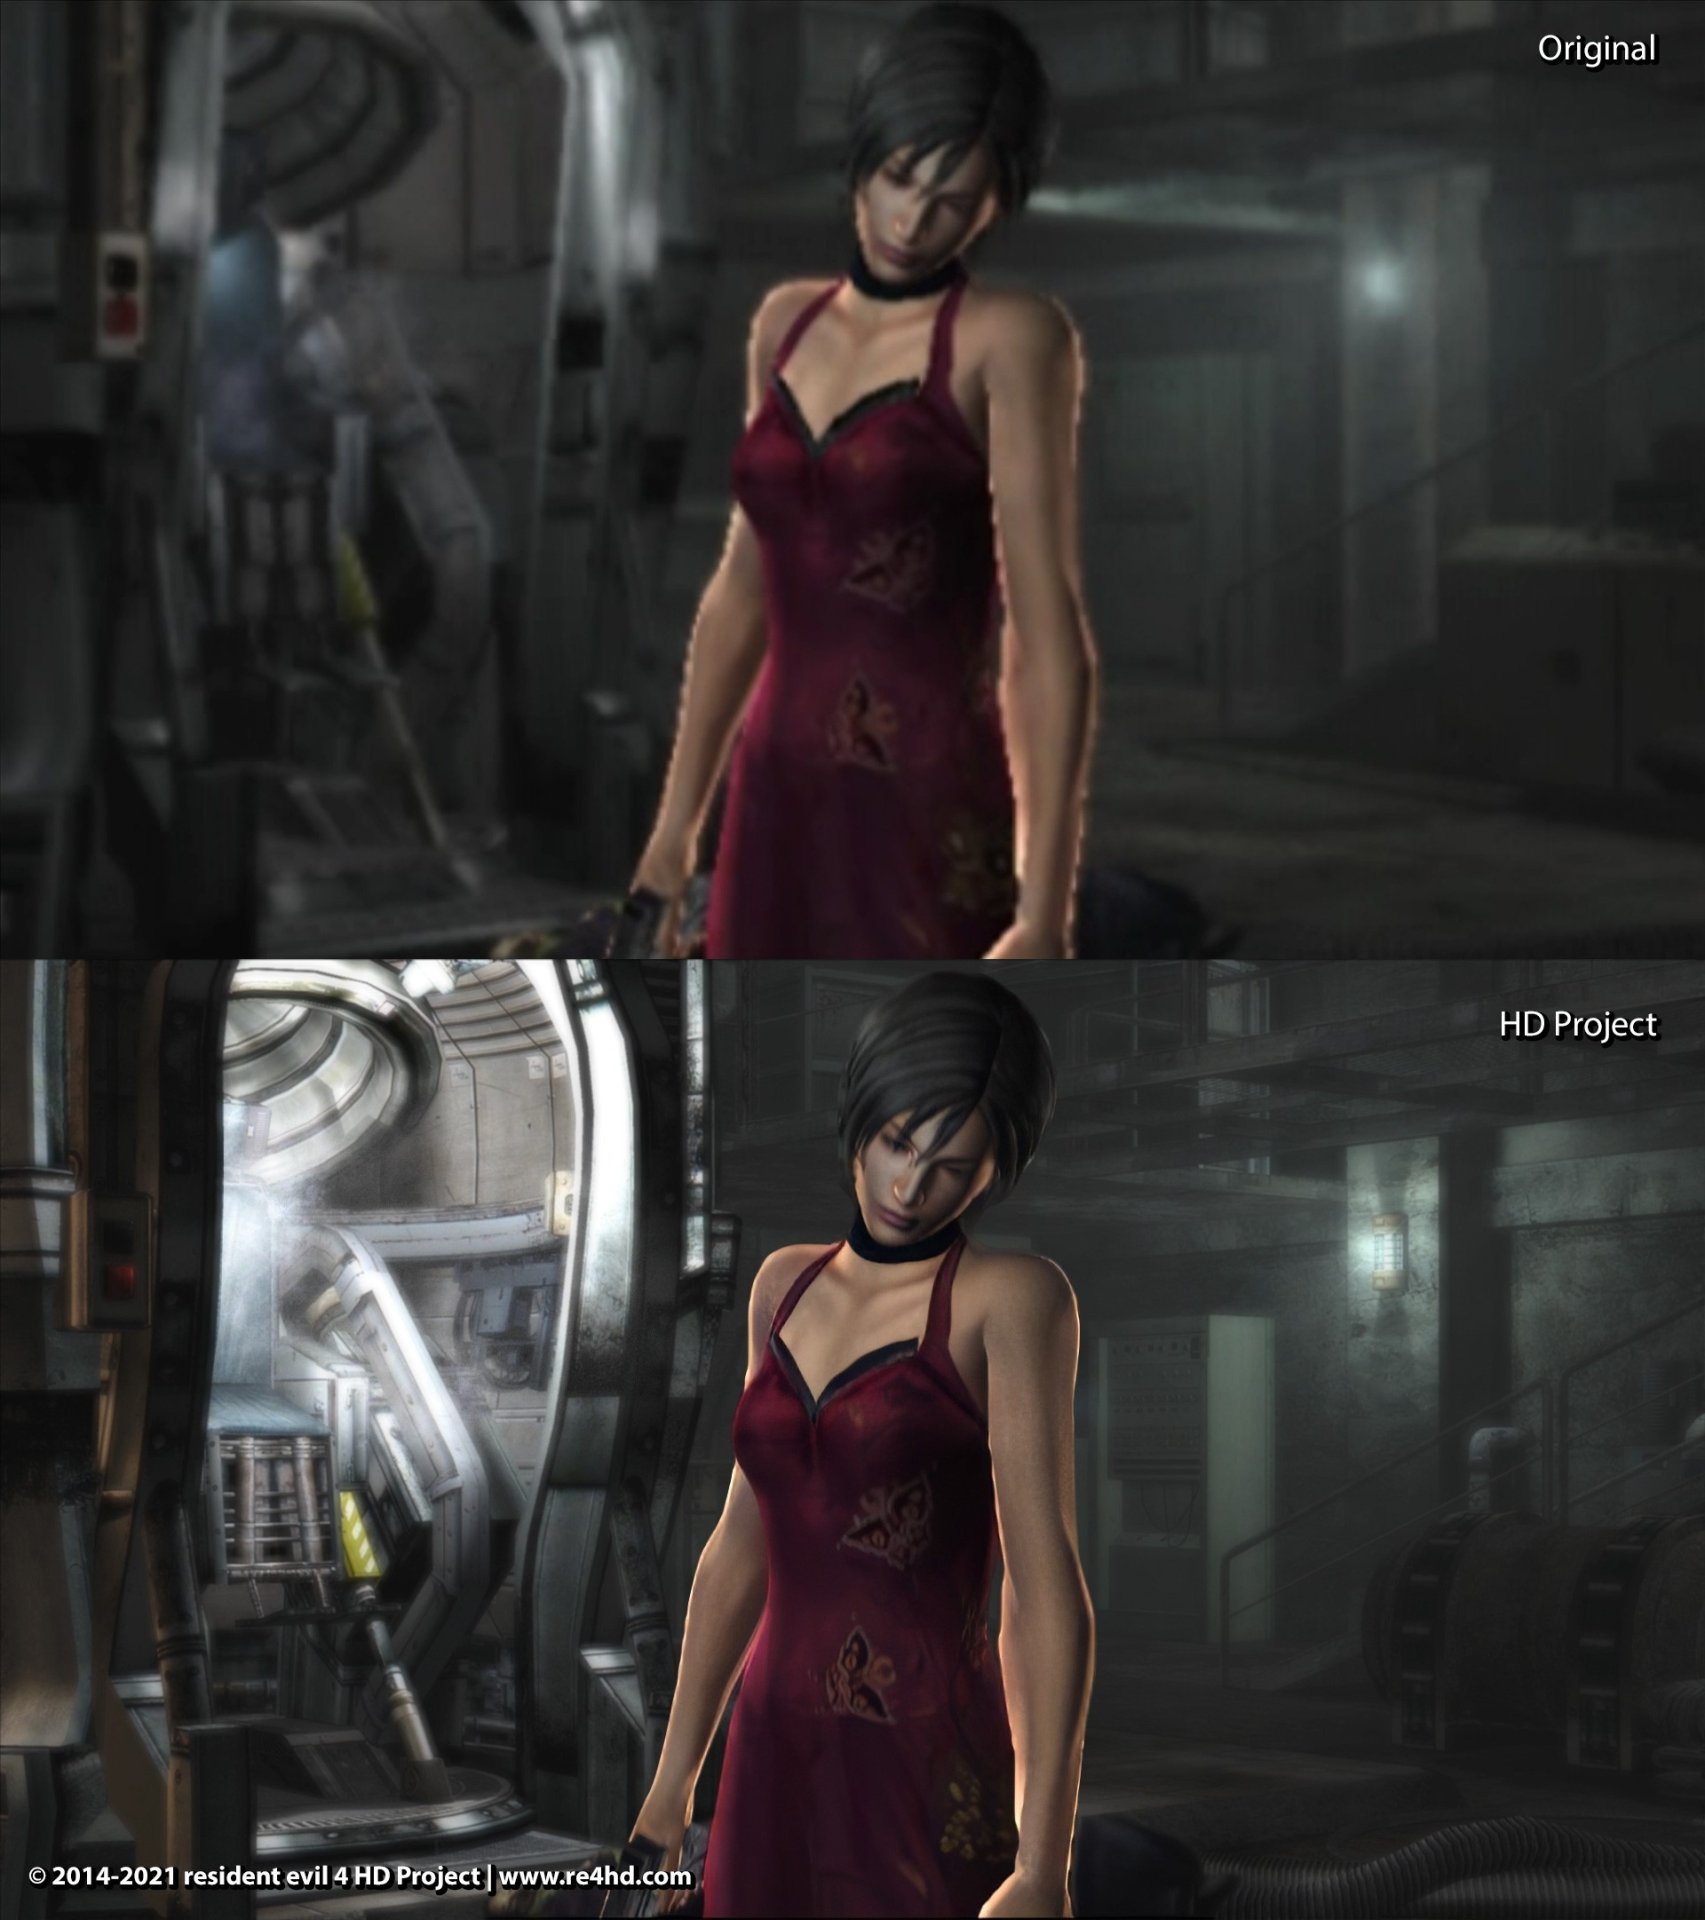 Энтузиаст сильно повысил детализацию в Resident Evil 4 с помощью своего мода